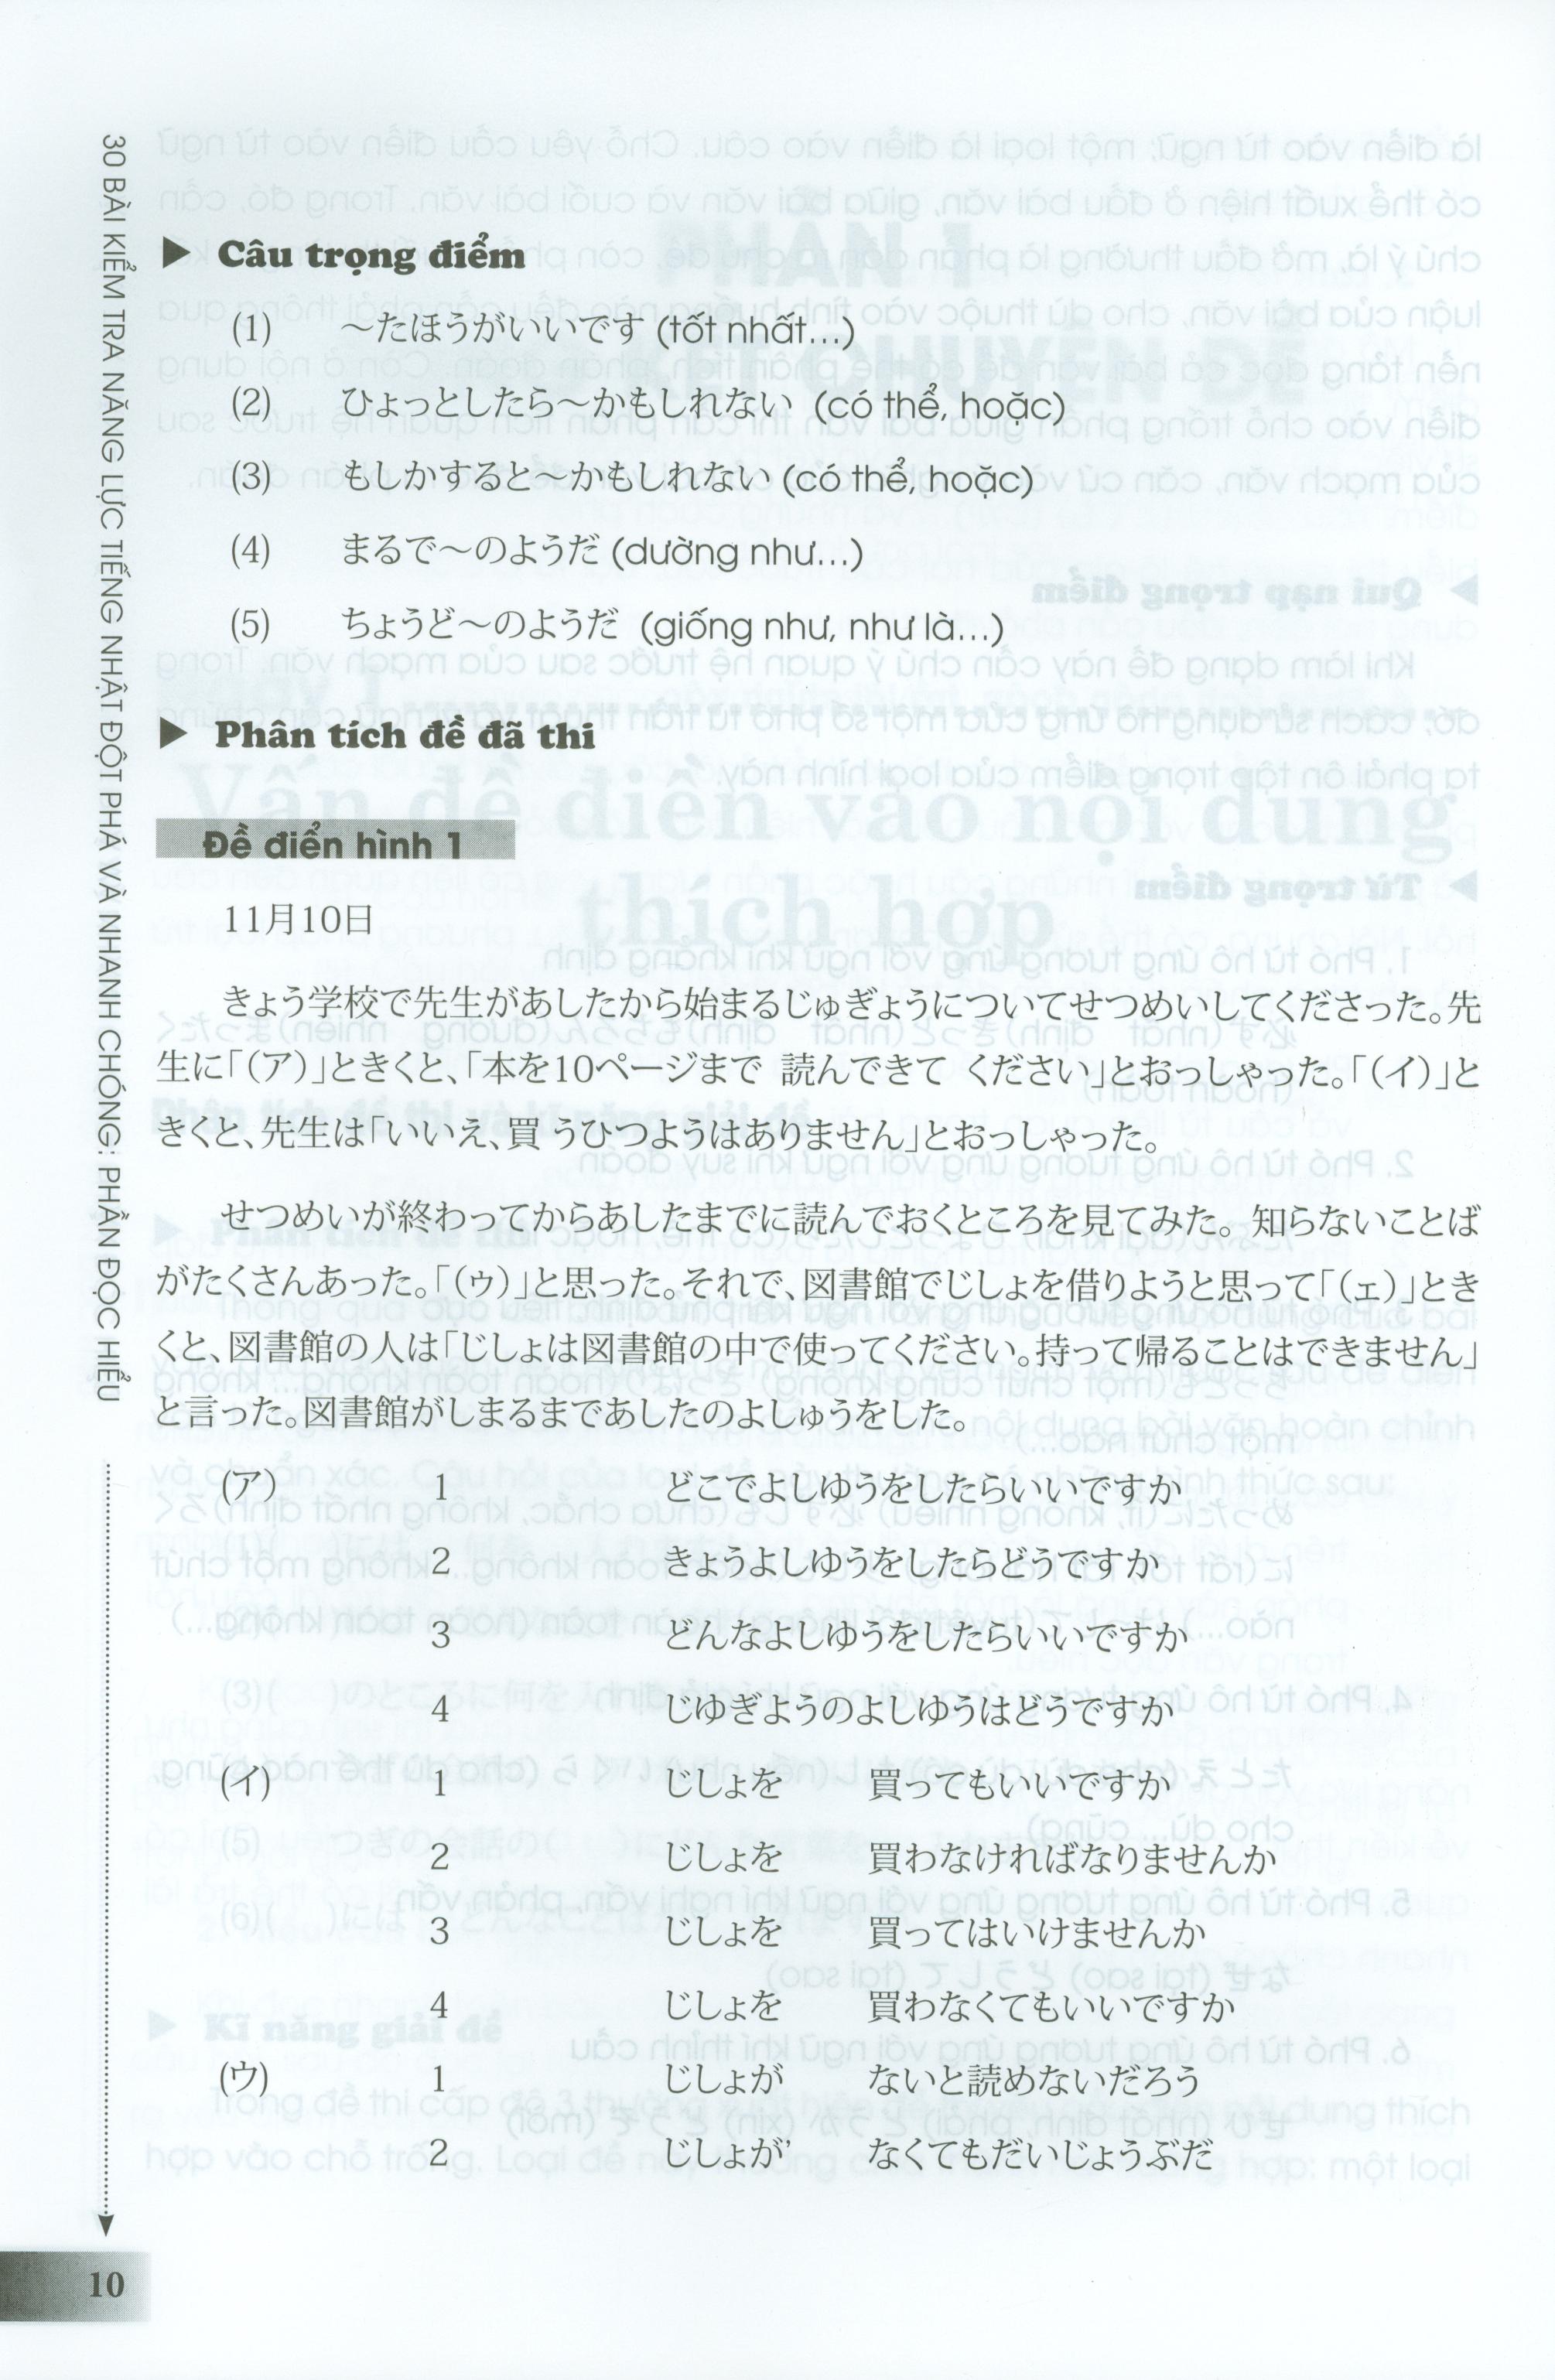 30 Bài Kiểm Tra Năng Lực Tiếng Nhật Đột Phá Và Nhanh Chóng - Phần Đọc Hiểu PDF